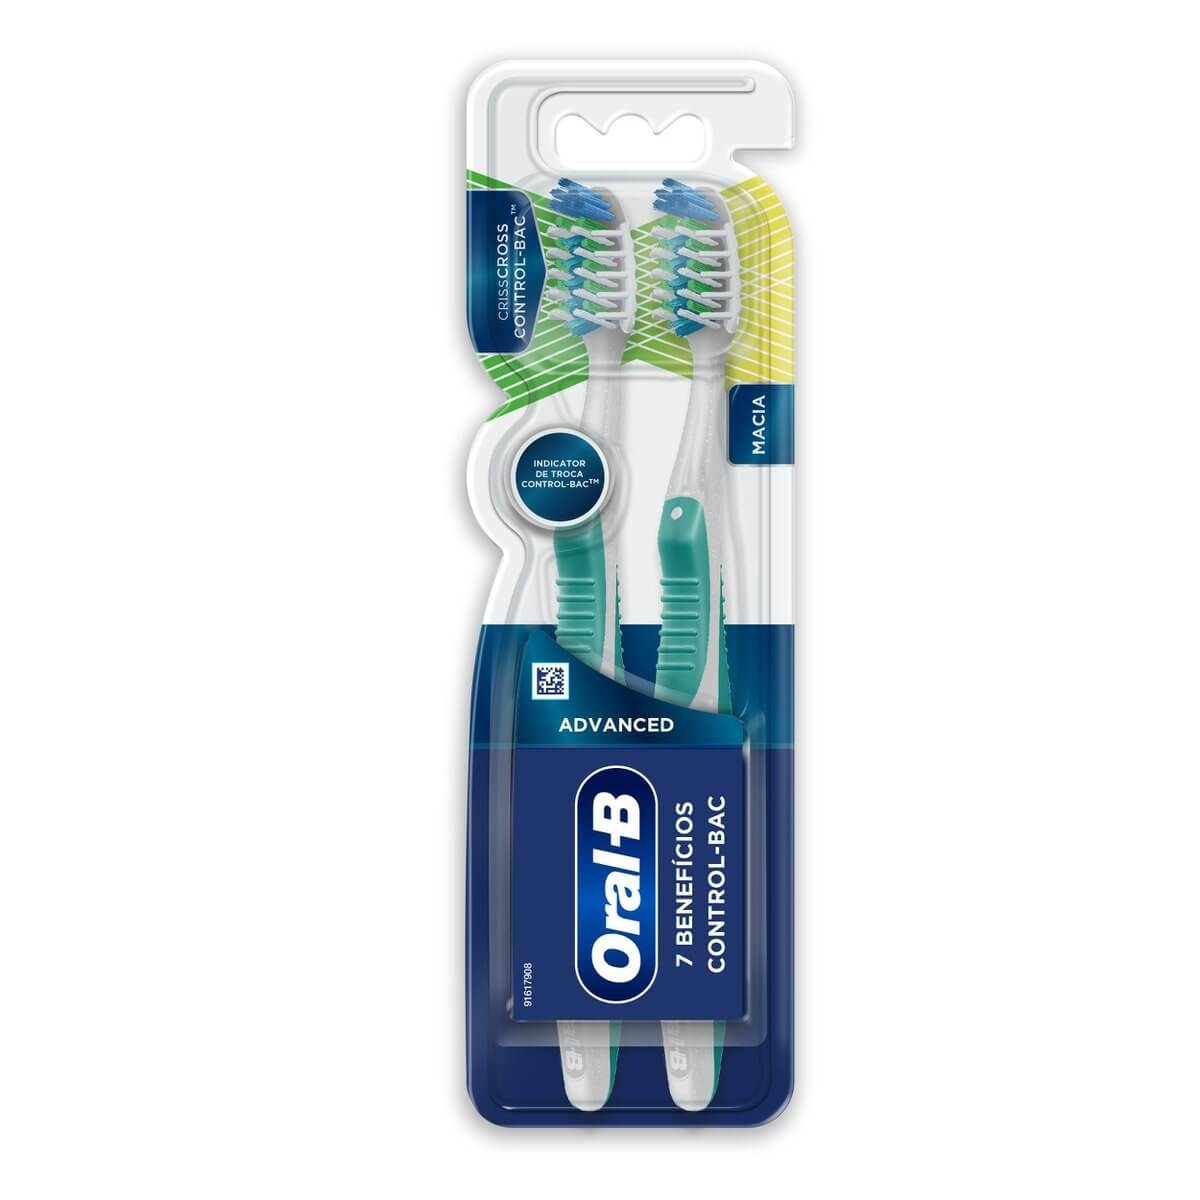 Escova de Dente Oral-B 7 Benefícios Control-Bac com 2 Unidades